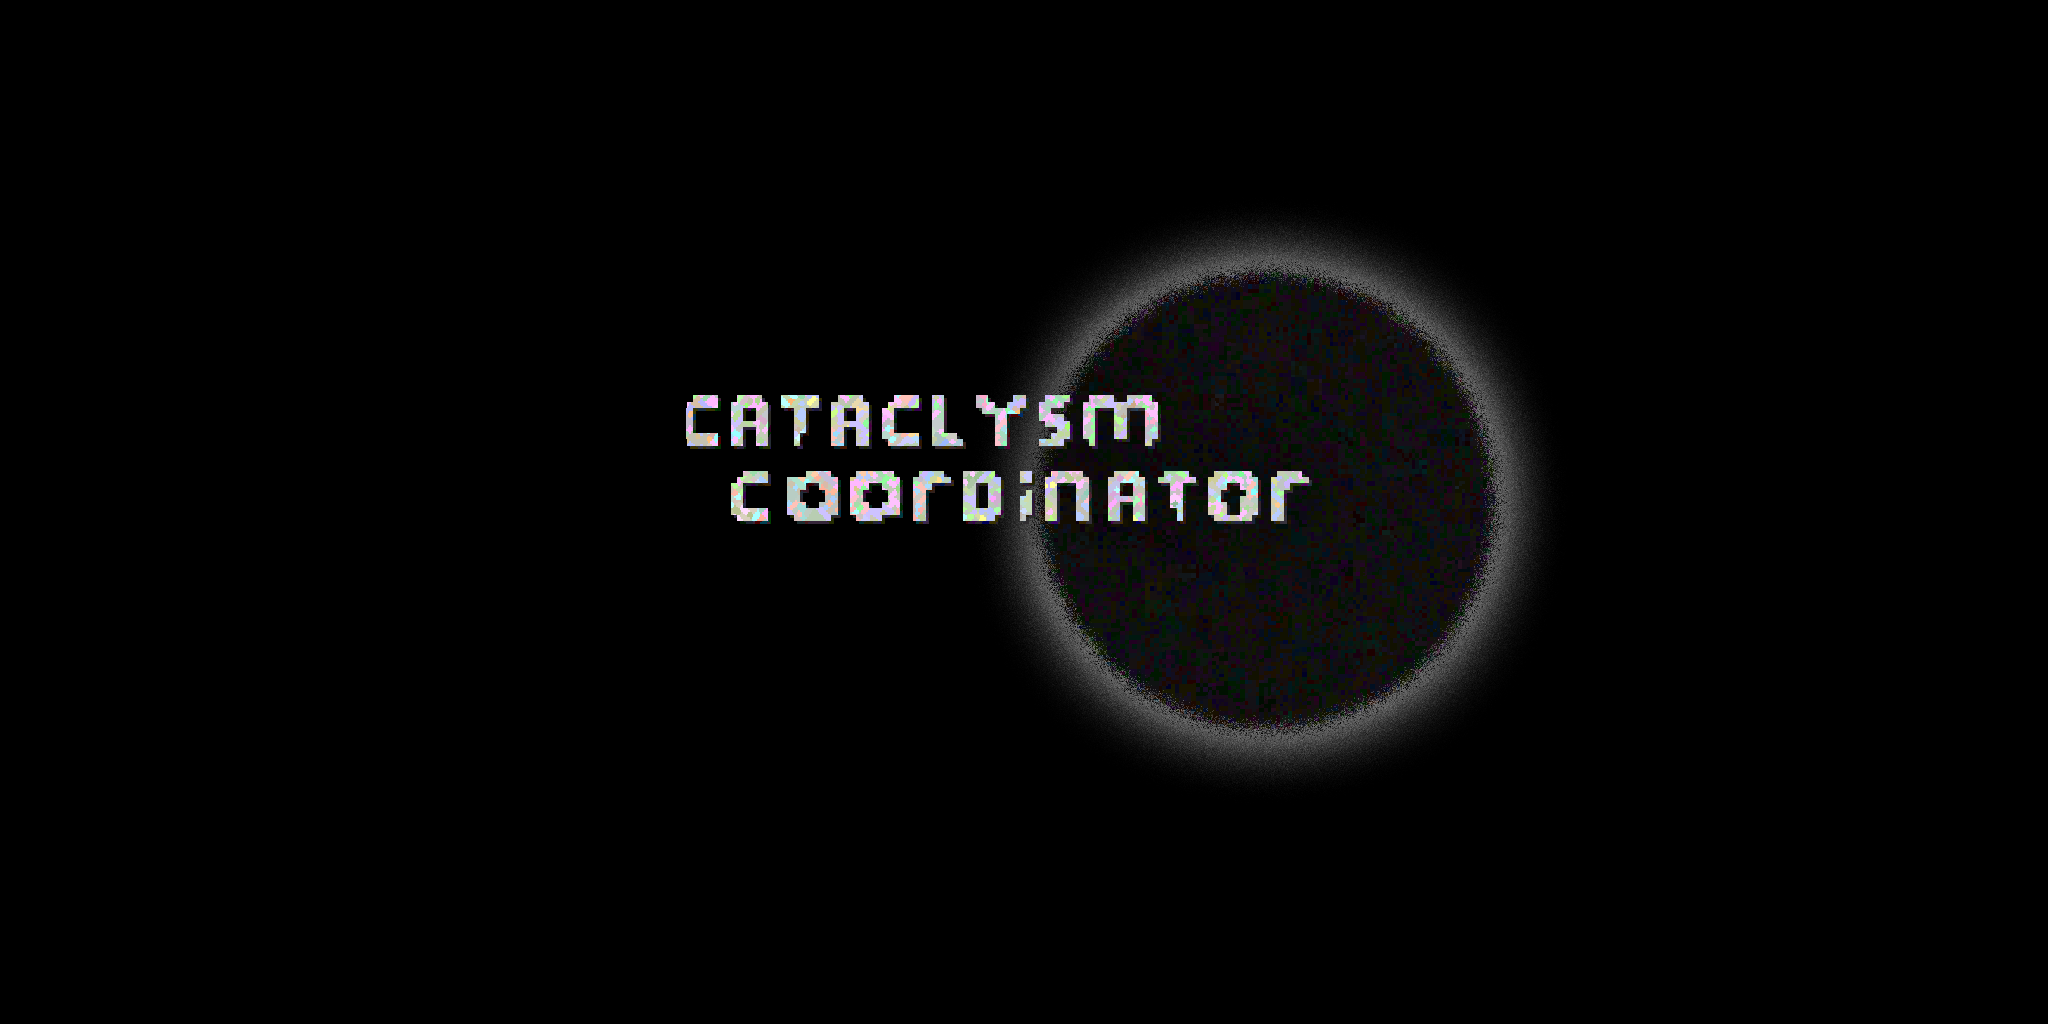 Cataclysm Coordinator